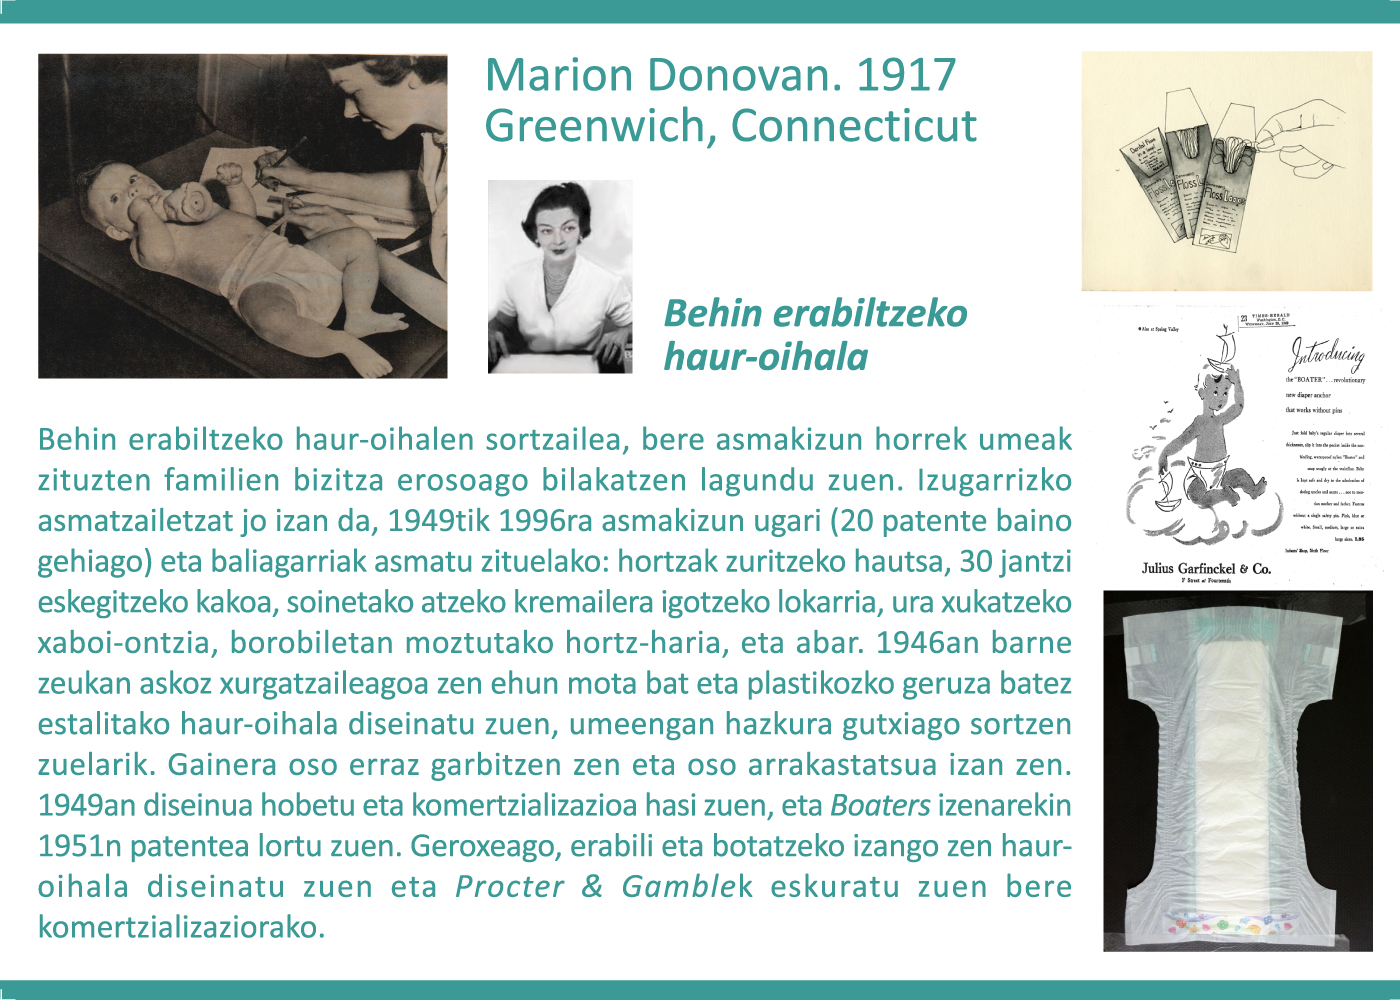 Marion Donovan, 1917. Behin erabiltzeko haur-oihalak